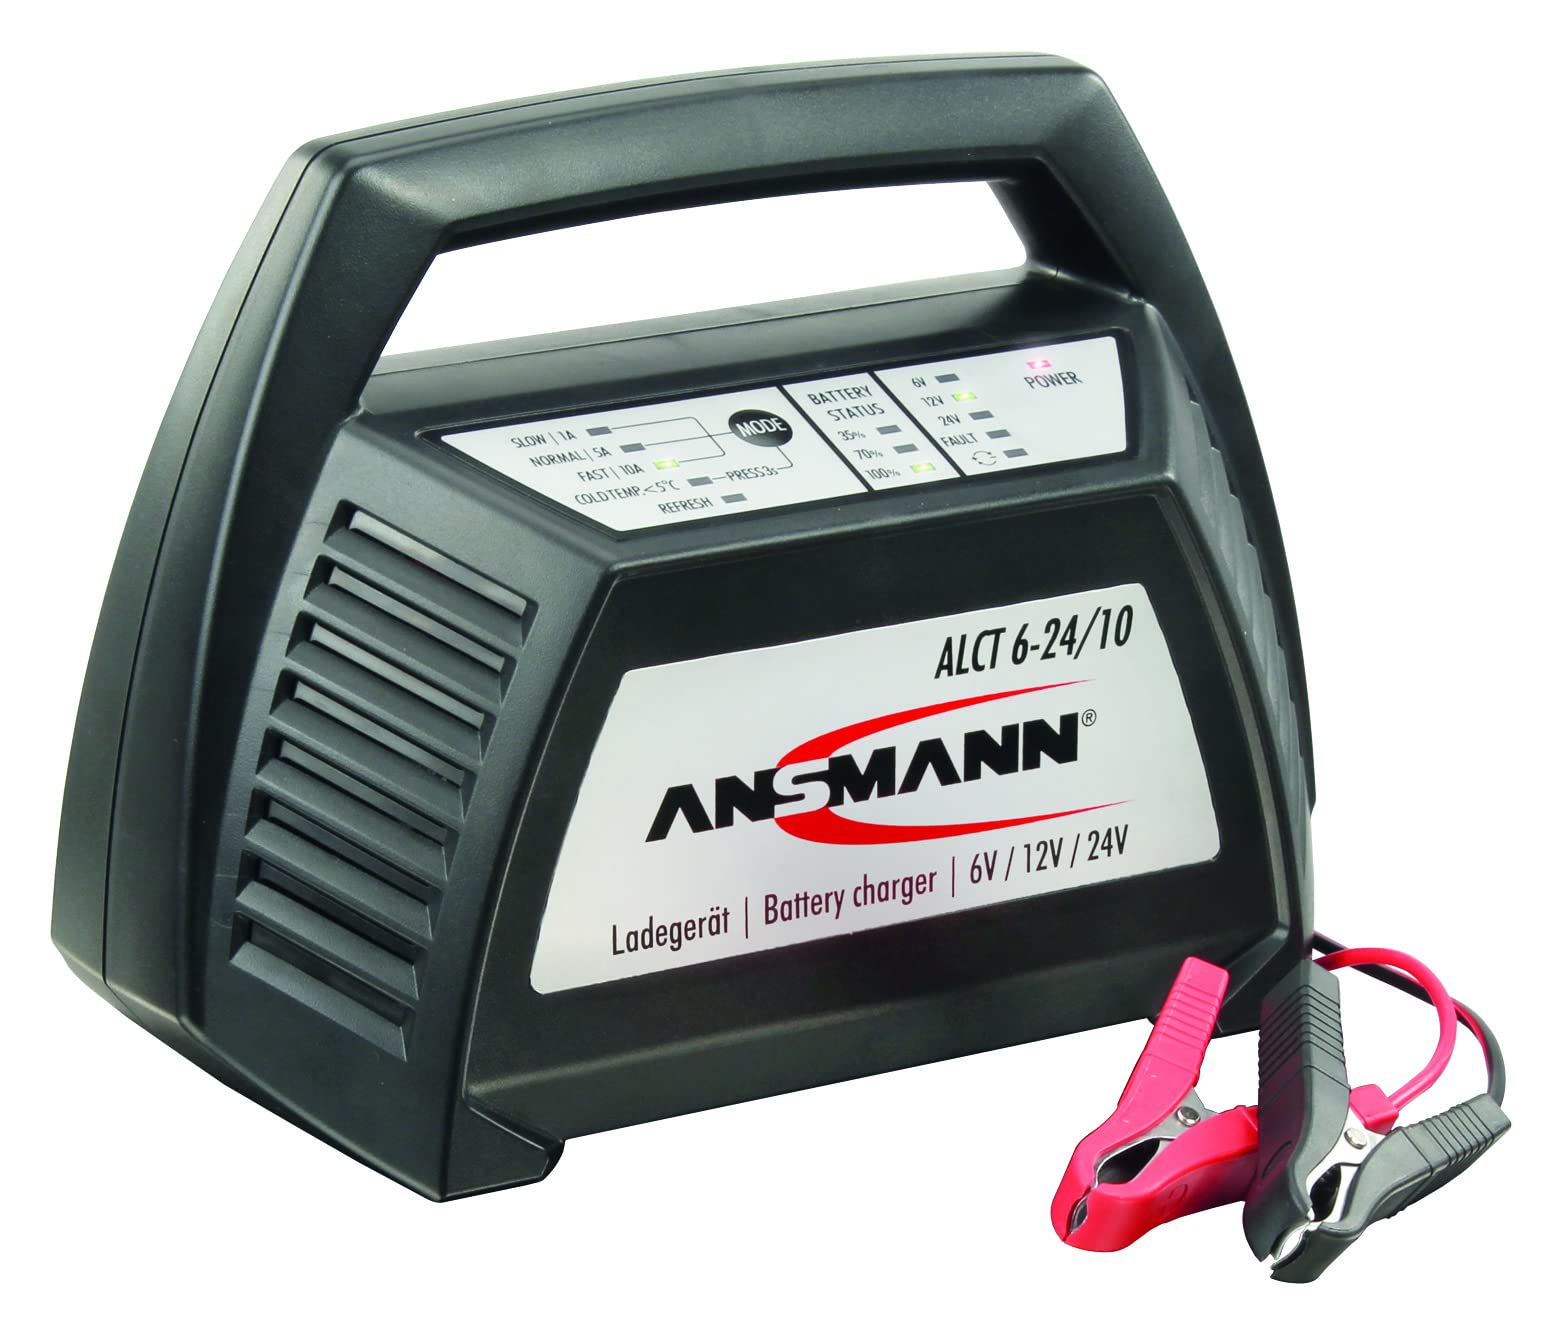 Ansmann ALCT-6-24/10 Batterie Multi-Ladegerät 6V/12V/24V 10A von Ansmann